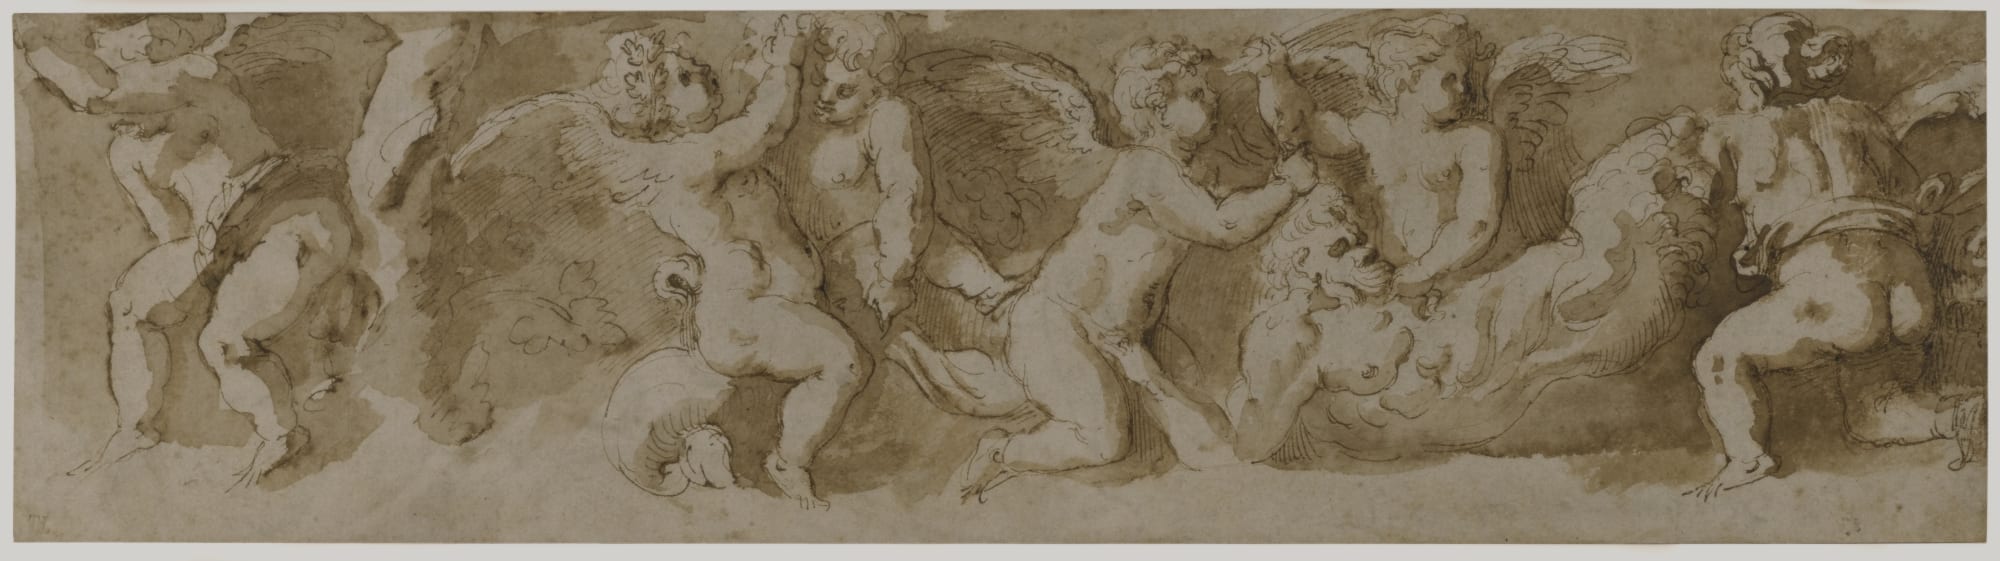 Girolamo da Carpi (1501-1556): Studio per un fregio con putti che tormentano un satiro